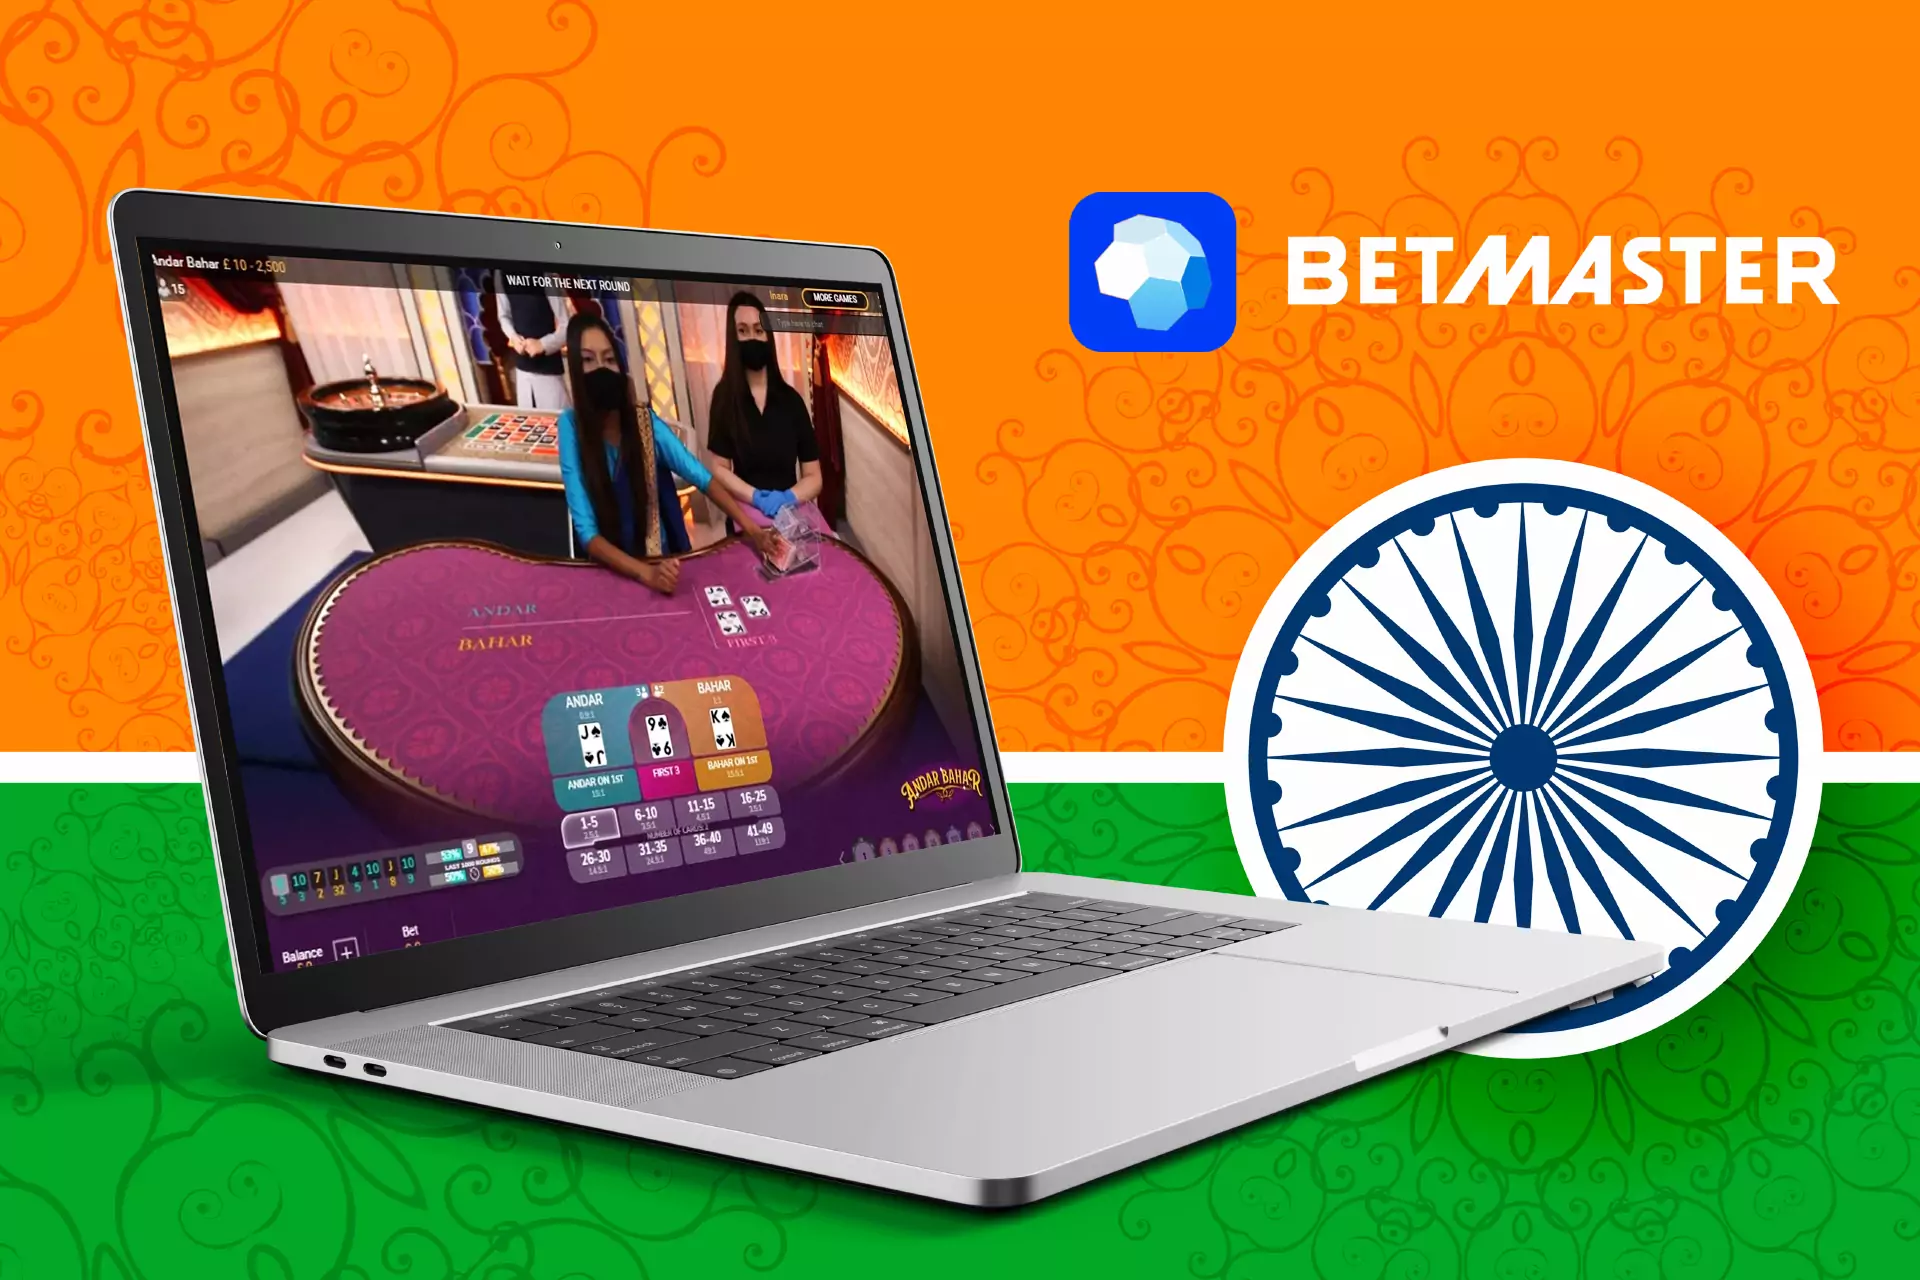 Betmaster भारतीय उपयोगकर्ताओं के लिए एक आधुनिक सट्टेबाजी और कैसीनो मंच है।